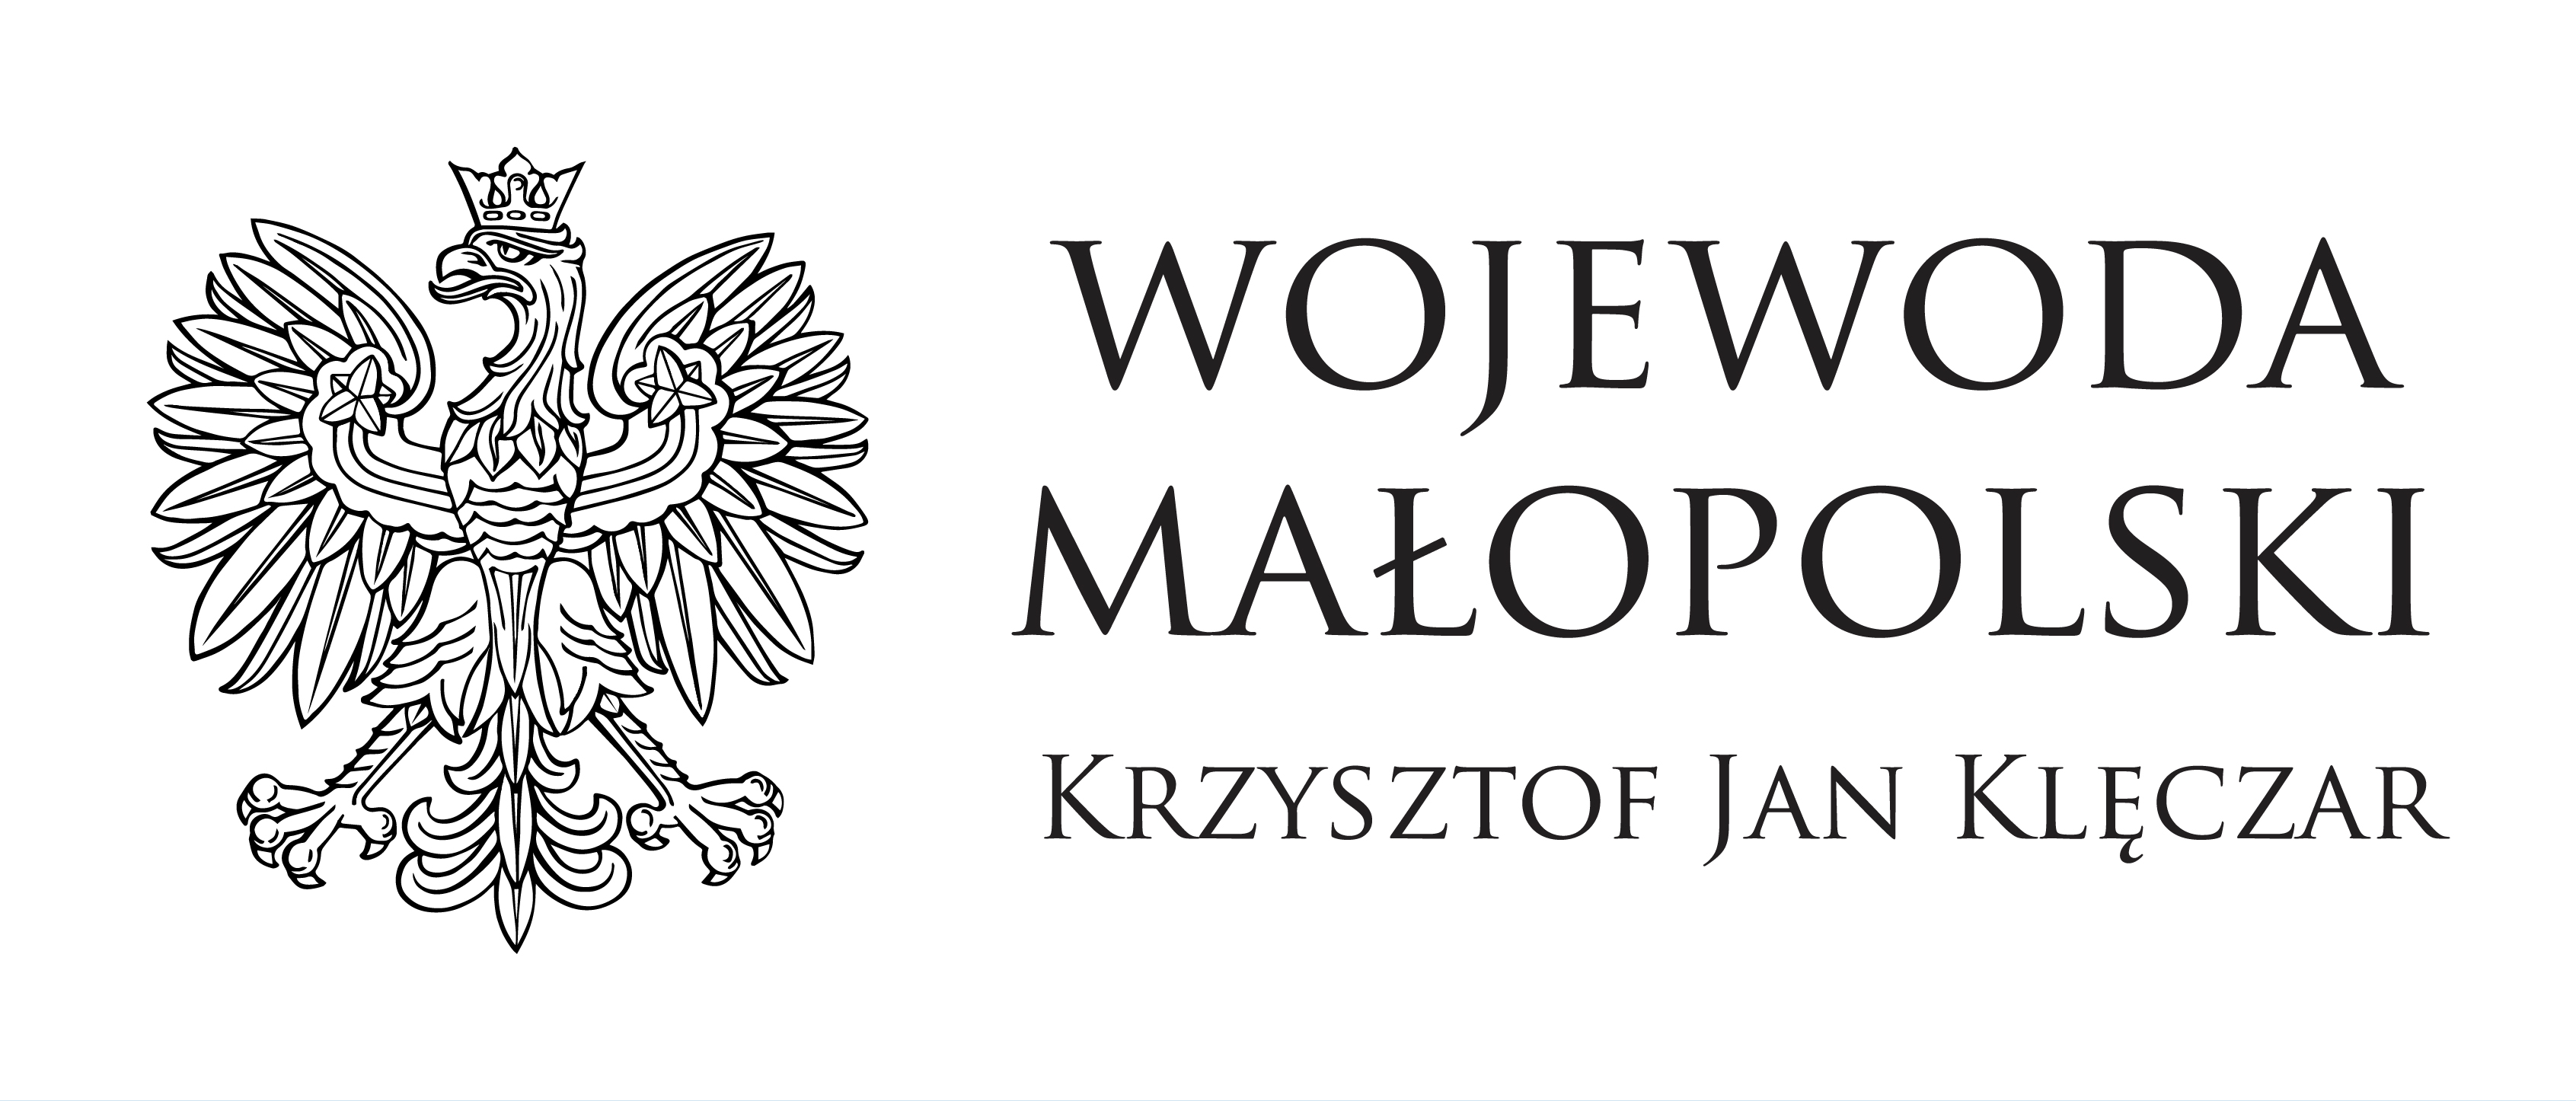 Wojewoda Małopolski Krzysztof Jan Kęlczar